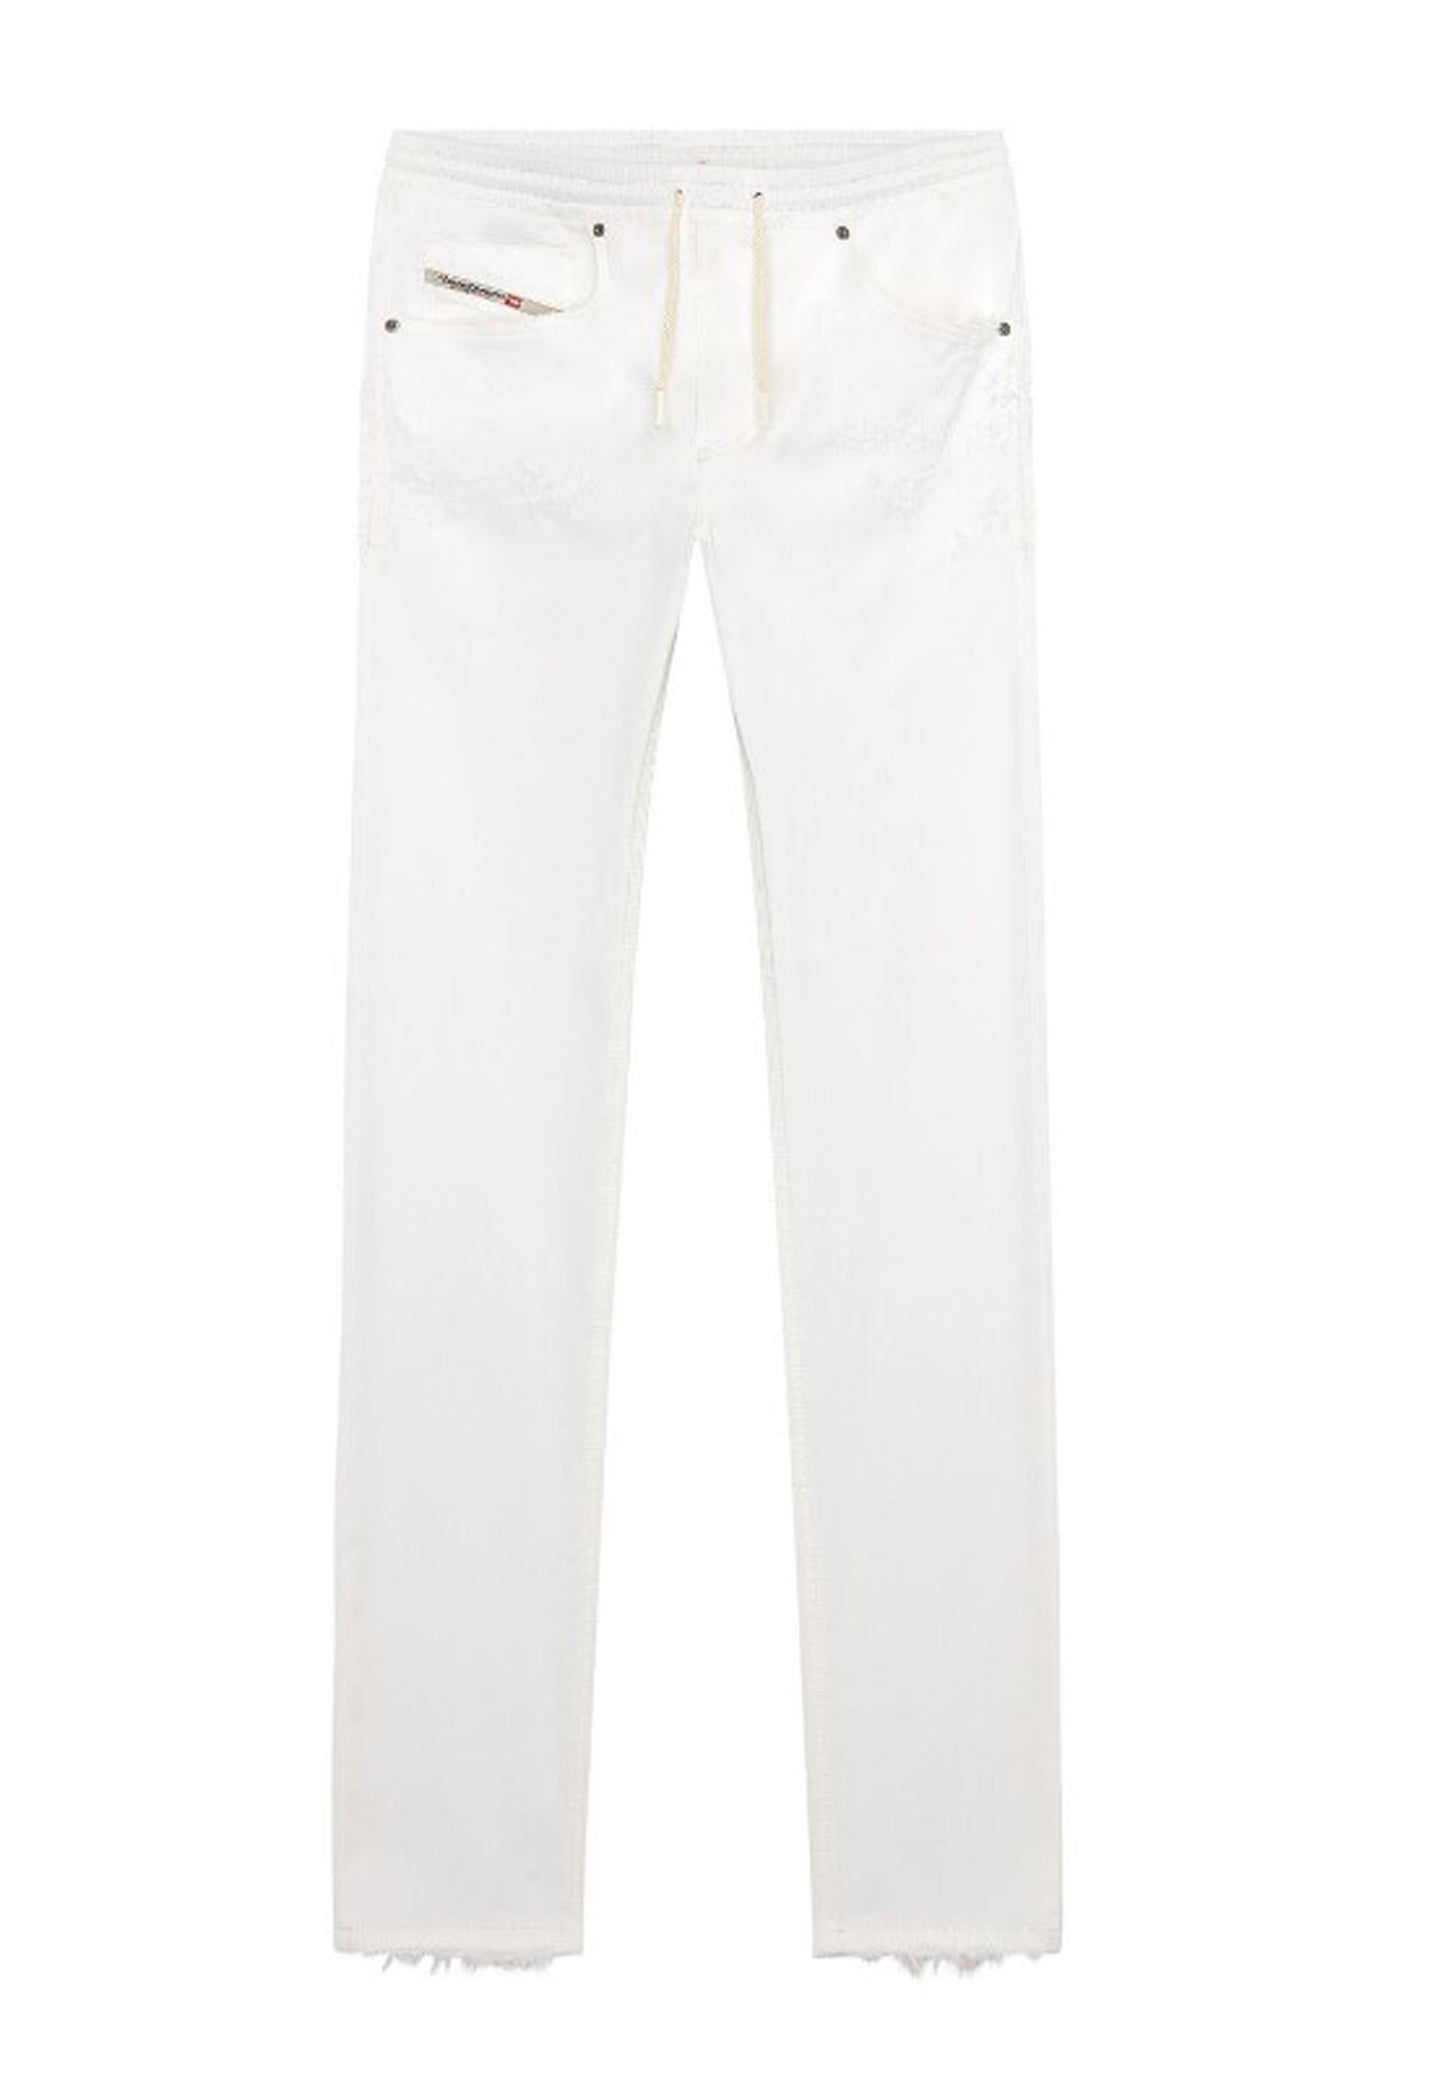 Pantalone Jeans bianco 2030 D-Krooley Joggjeans Diesel P24